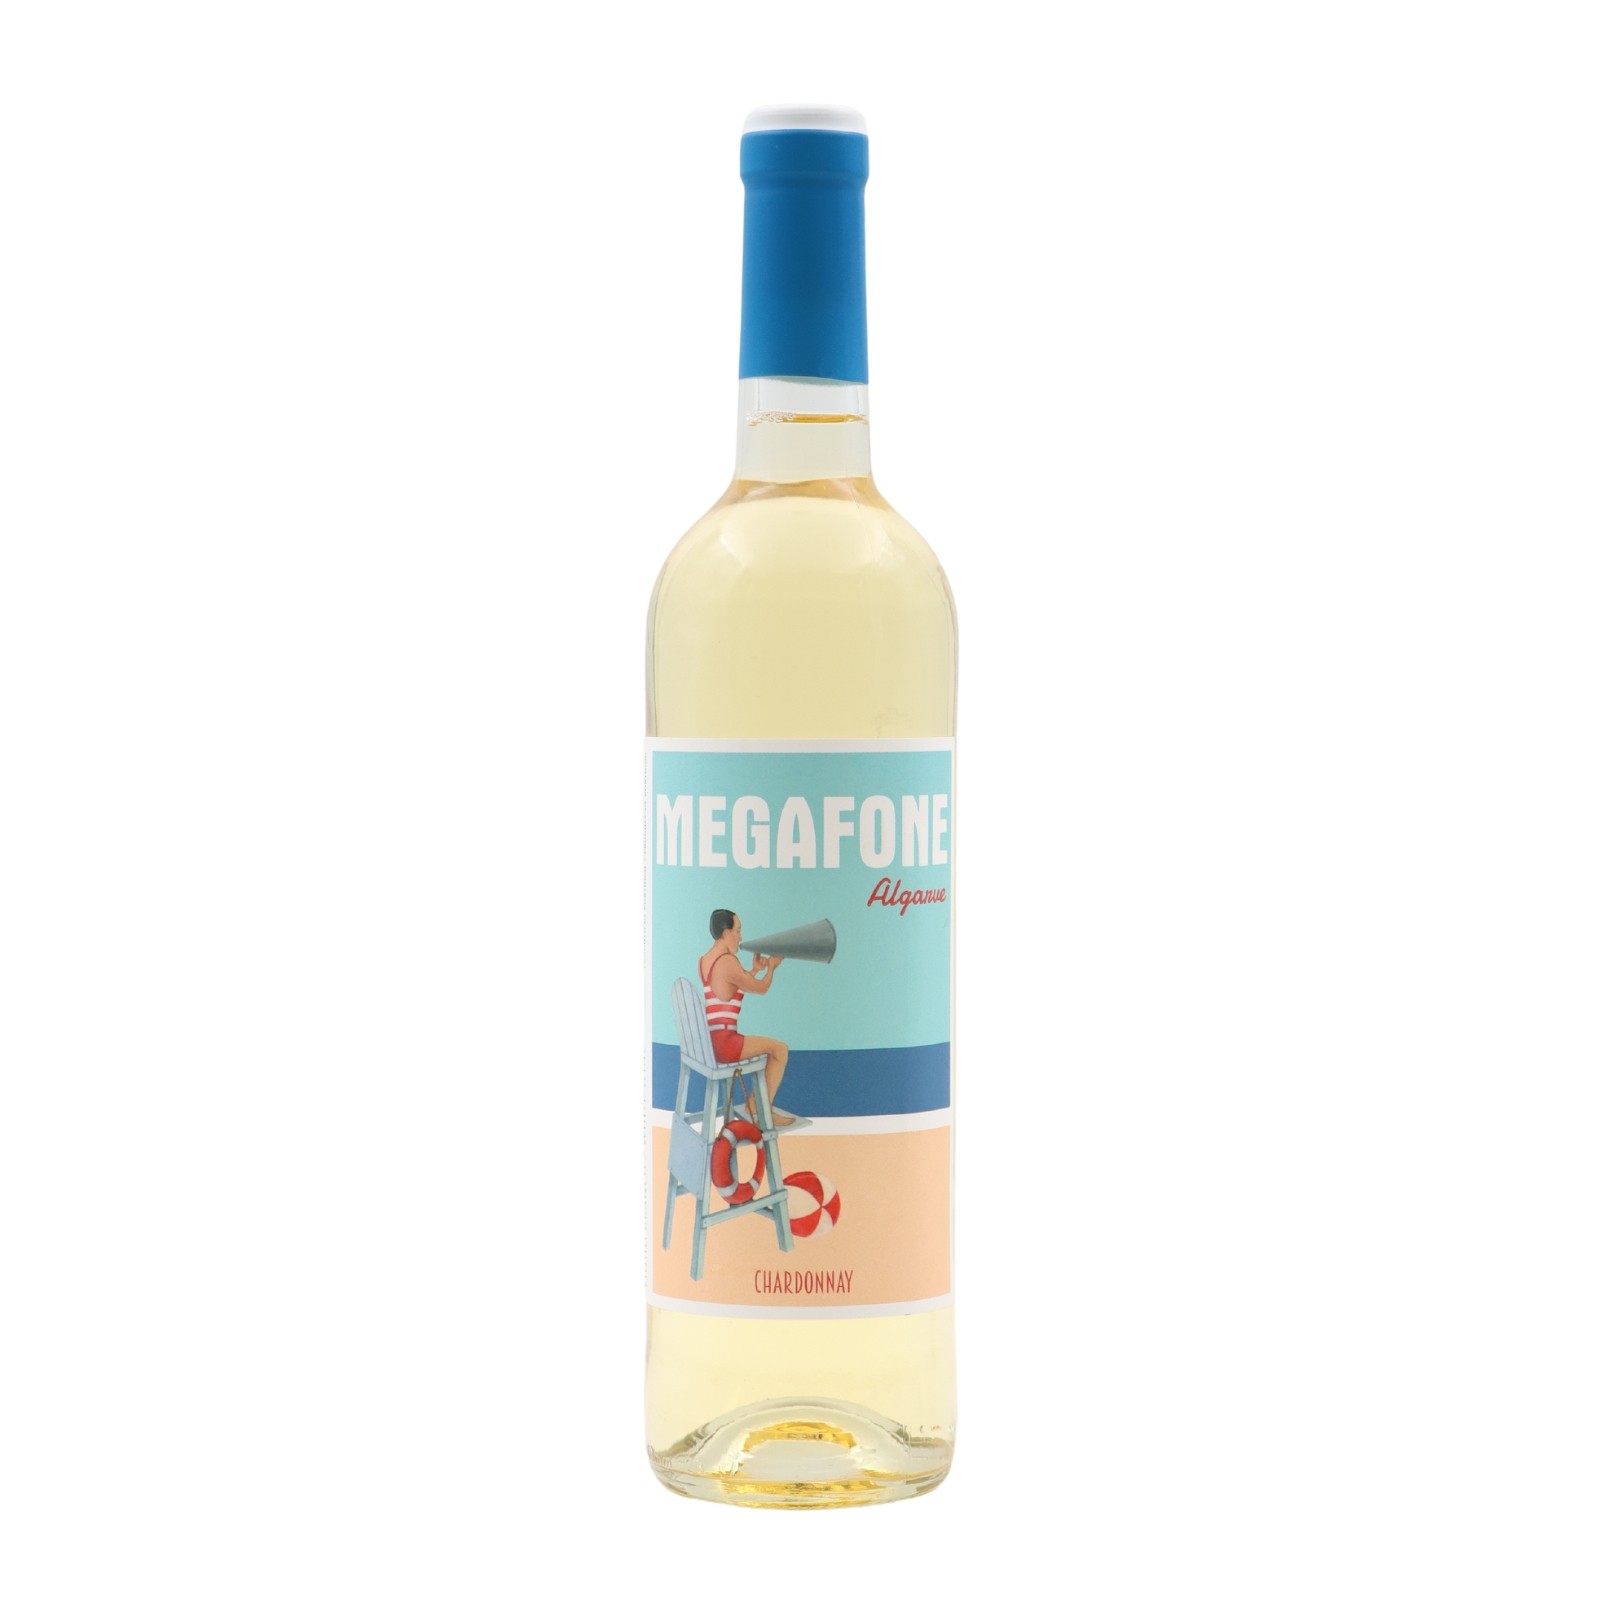 Megafone Chardonnay White 2021